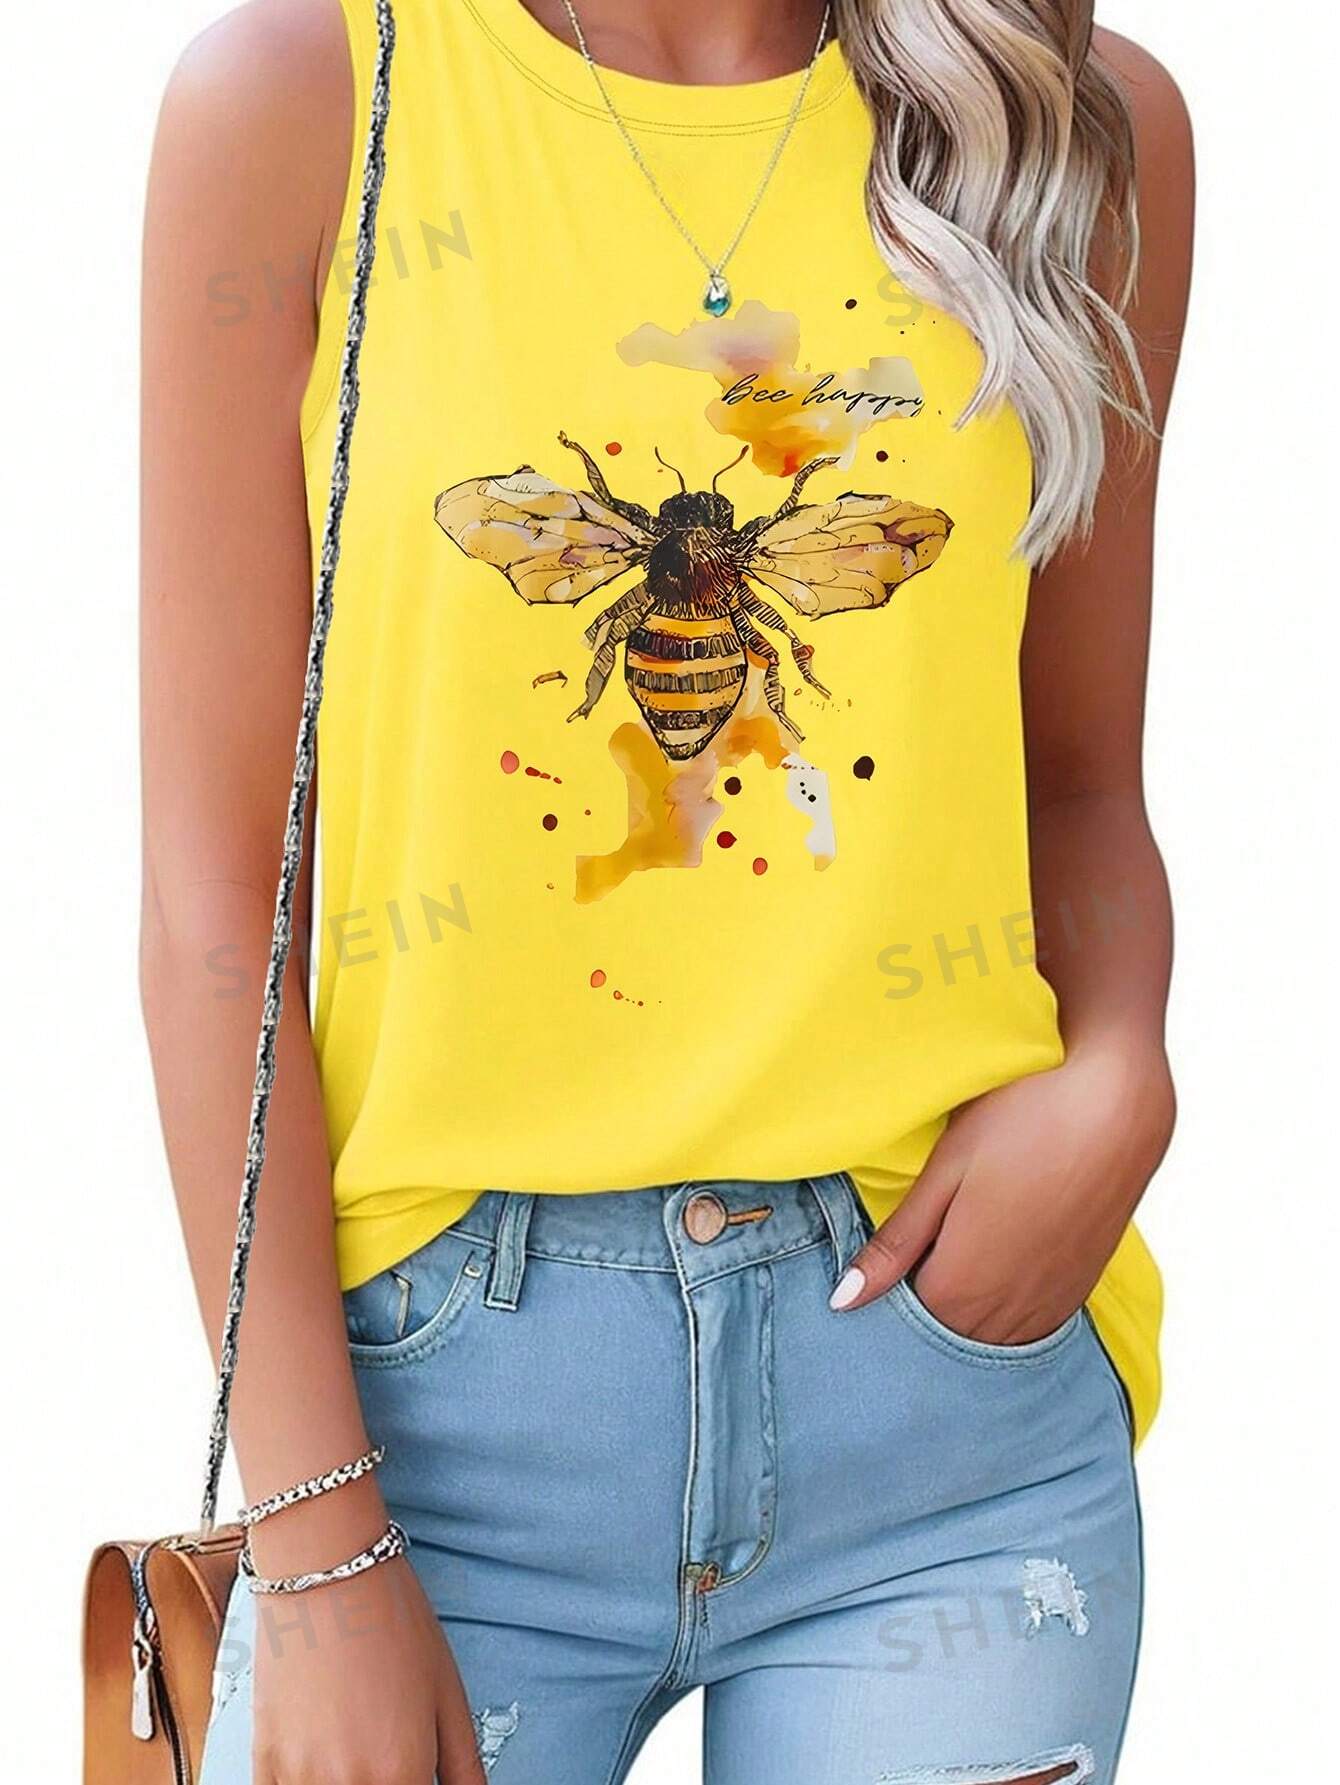 SHEIN LUNE Женская майка с принтом пчел и букв, желтый футболка женская оверсайз с графическим принтом модный топ без рукавов бандажный топ с круглым вырезом уличная одежда 2022